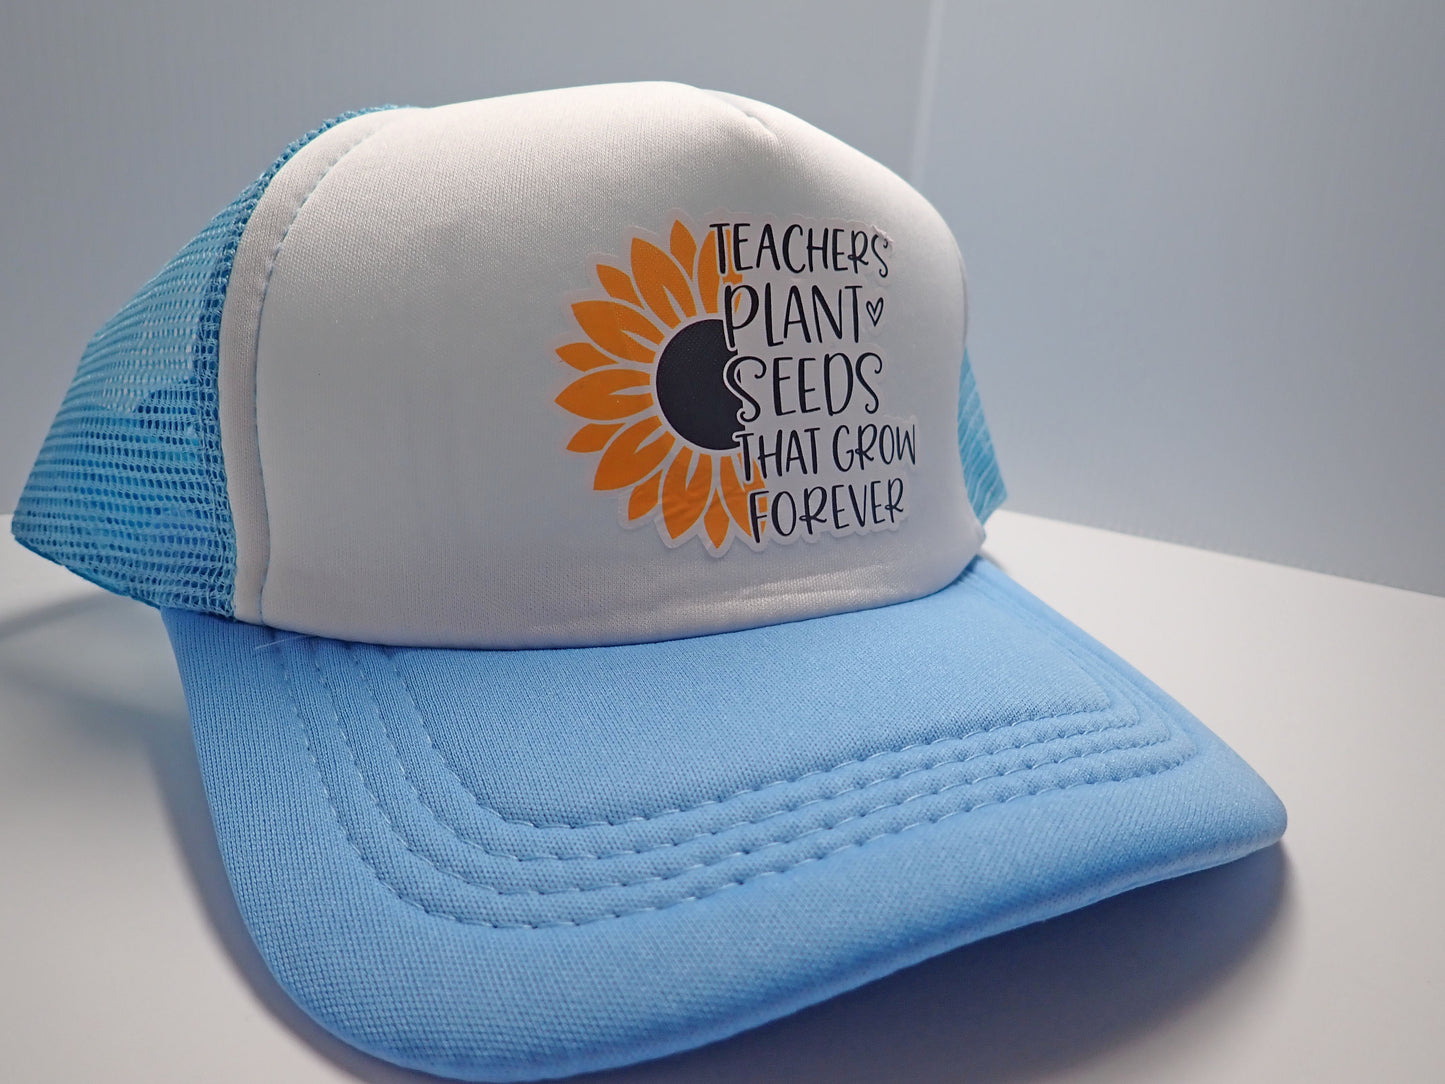 Ball cap, trucker cap, hat, blue, white, one size fits most, teacher focal, gift